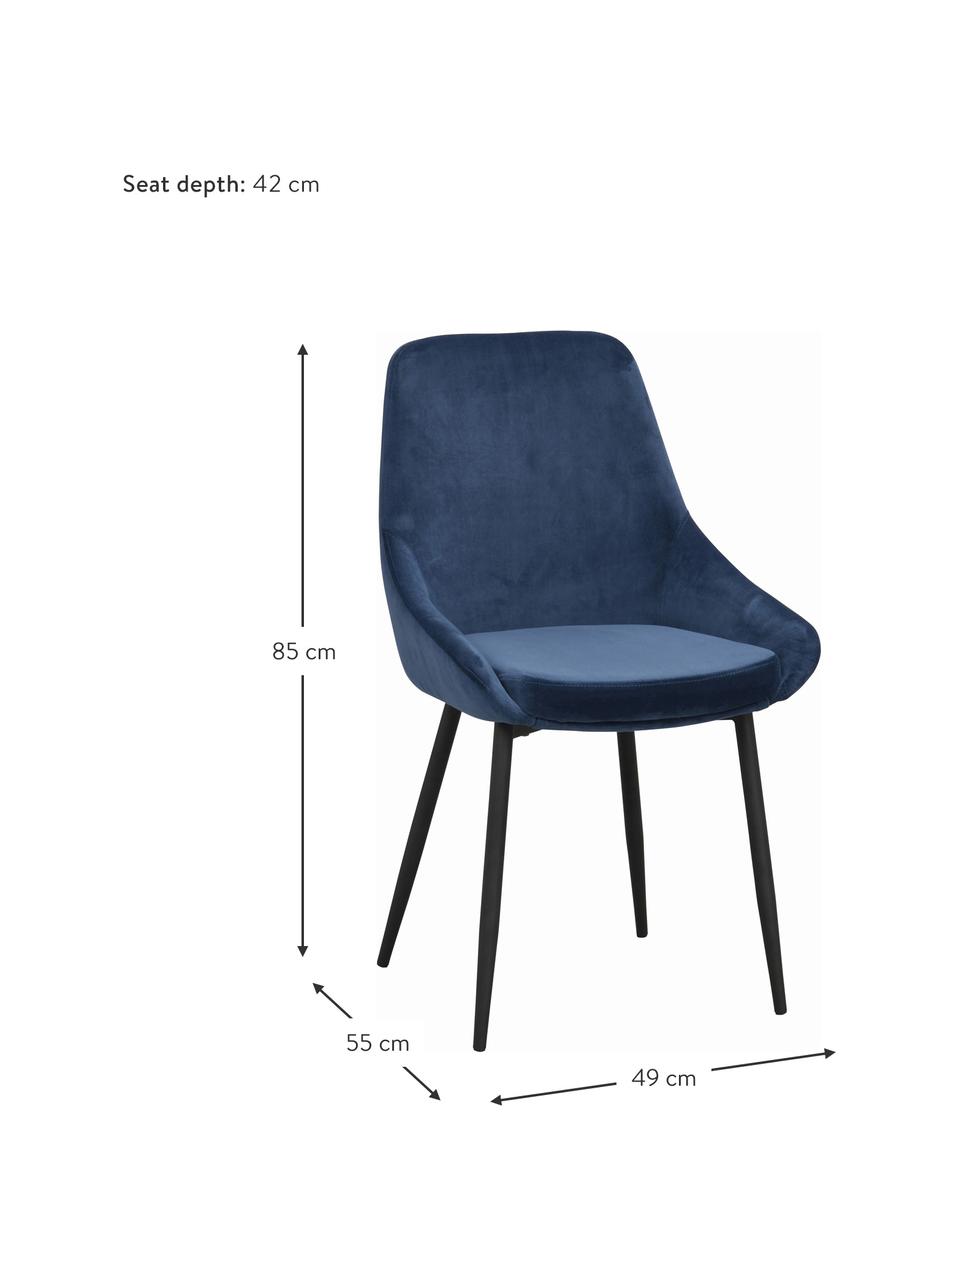 Krzesło tapicerowane z aksamitu Sierra, 2 szt., Tapicerka: 100% aksamit poliestrowy, Nogi: metal lakierowany, Ciemnoniebieski aksamit, S 49 x G 55 cm